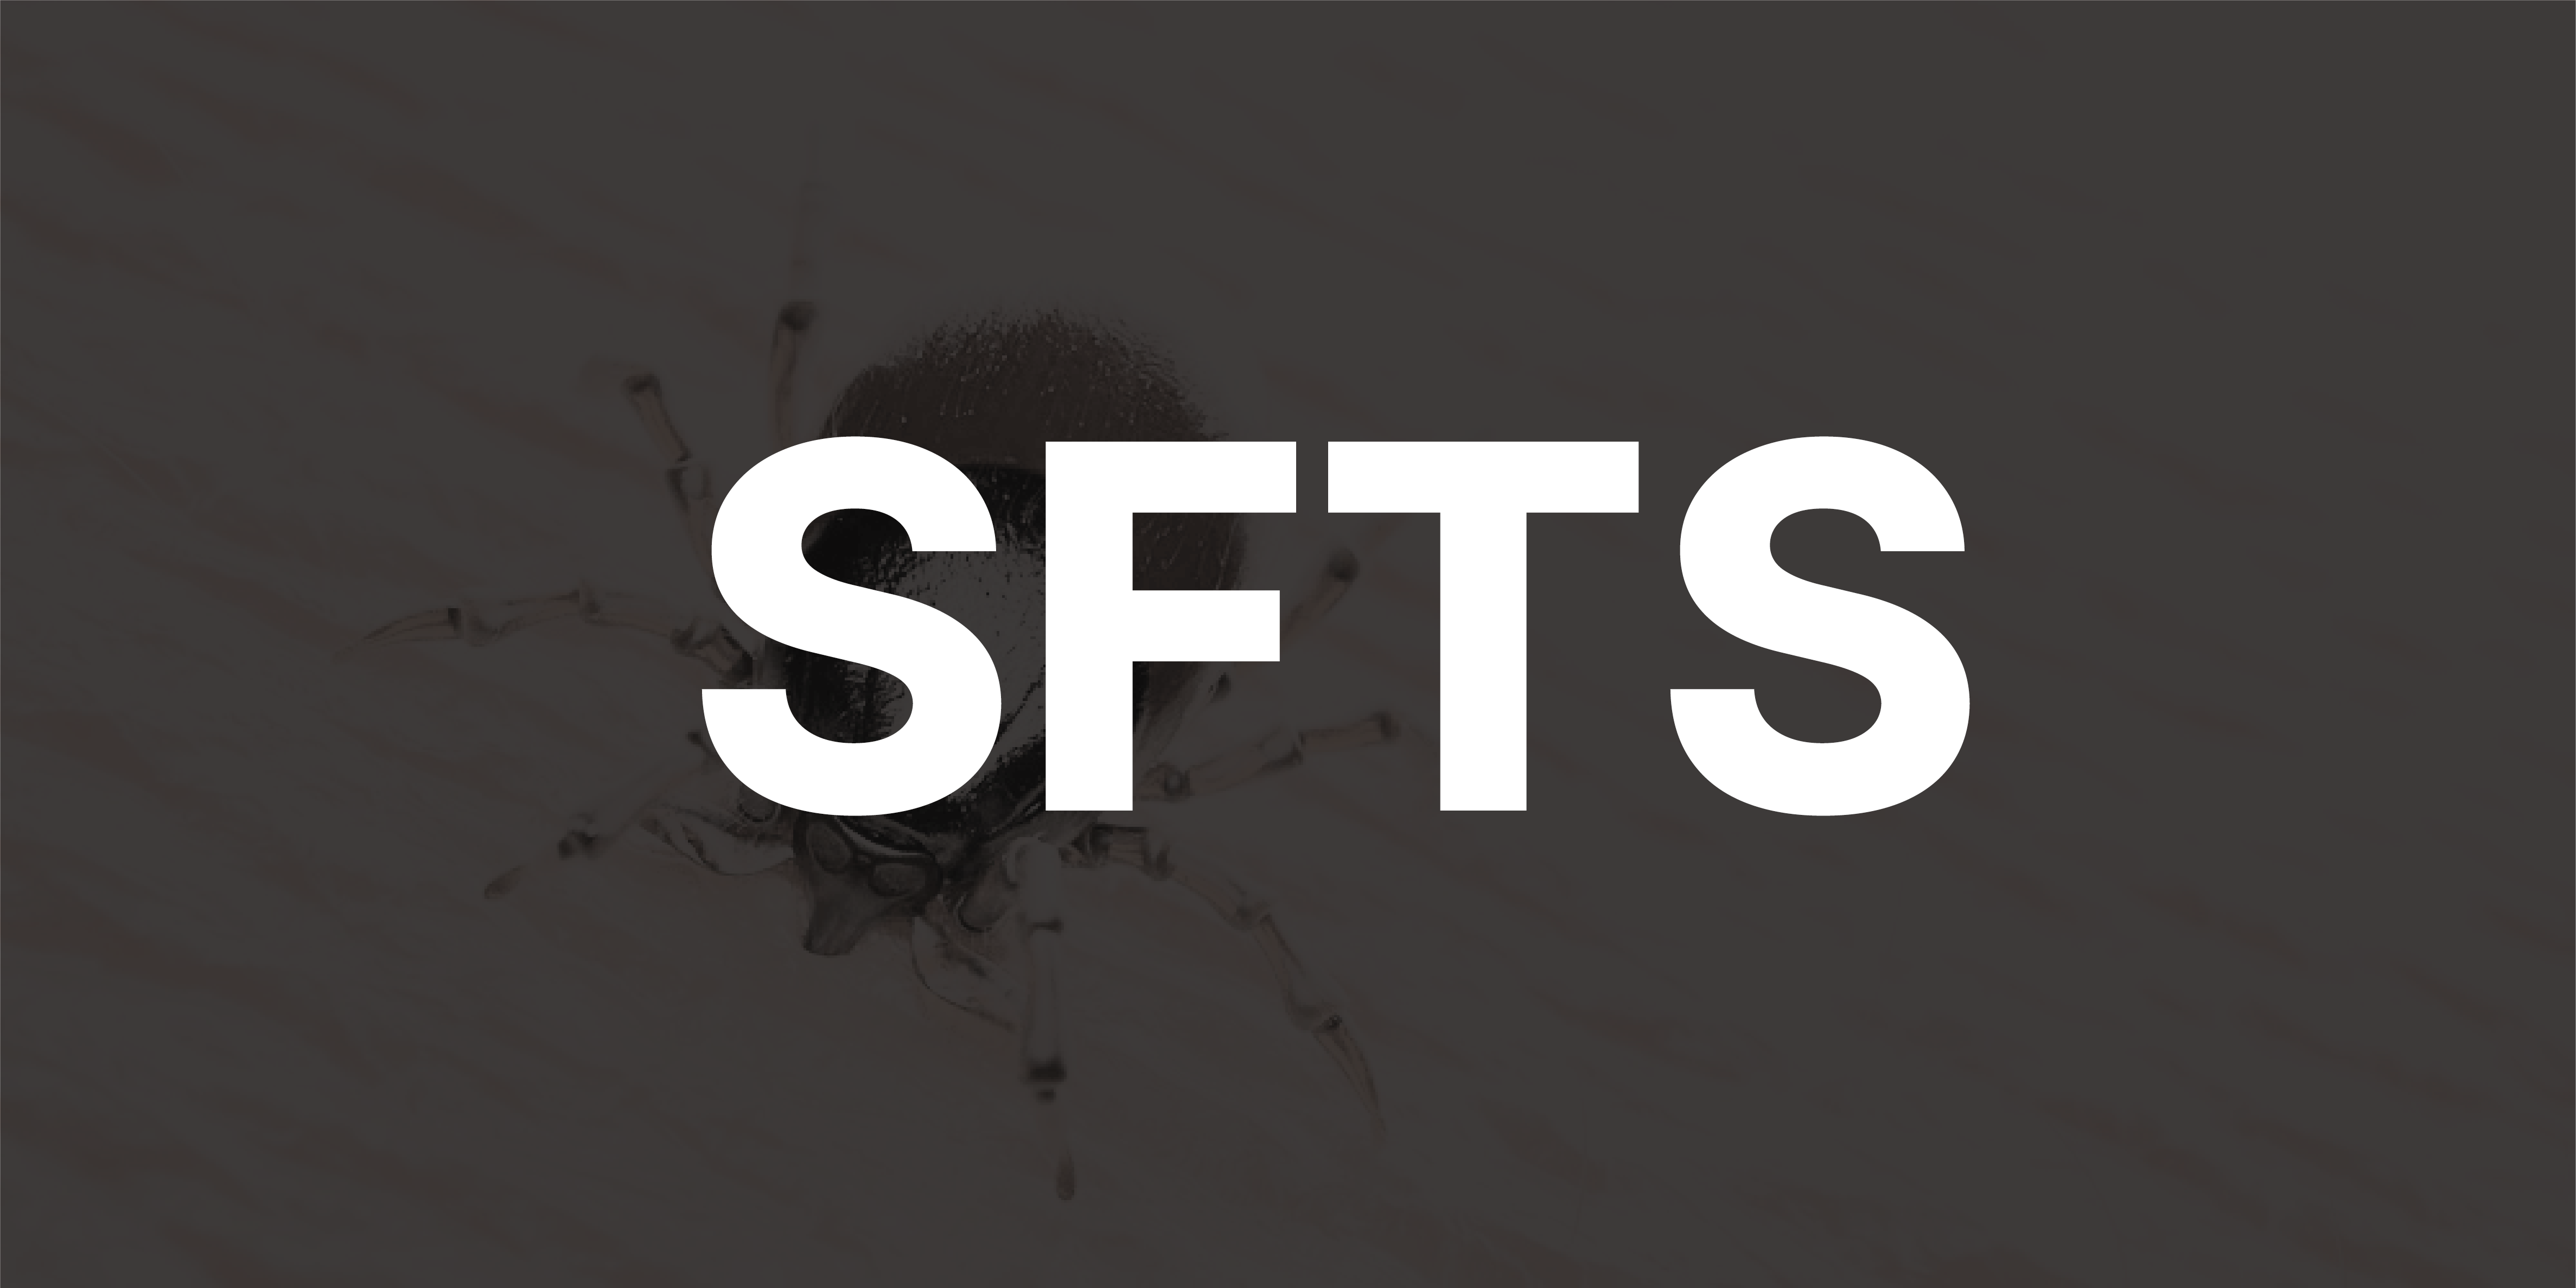 중증열성혈소판감소증후군(SFTS) 증상, 감염경로, 예방법, 대응, 사람 간 전파여부